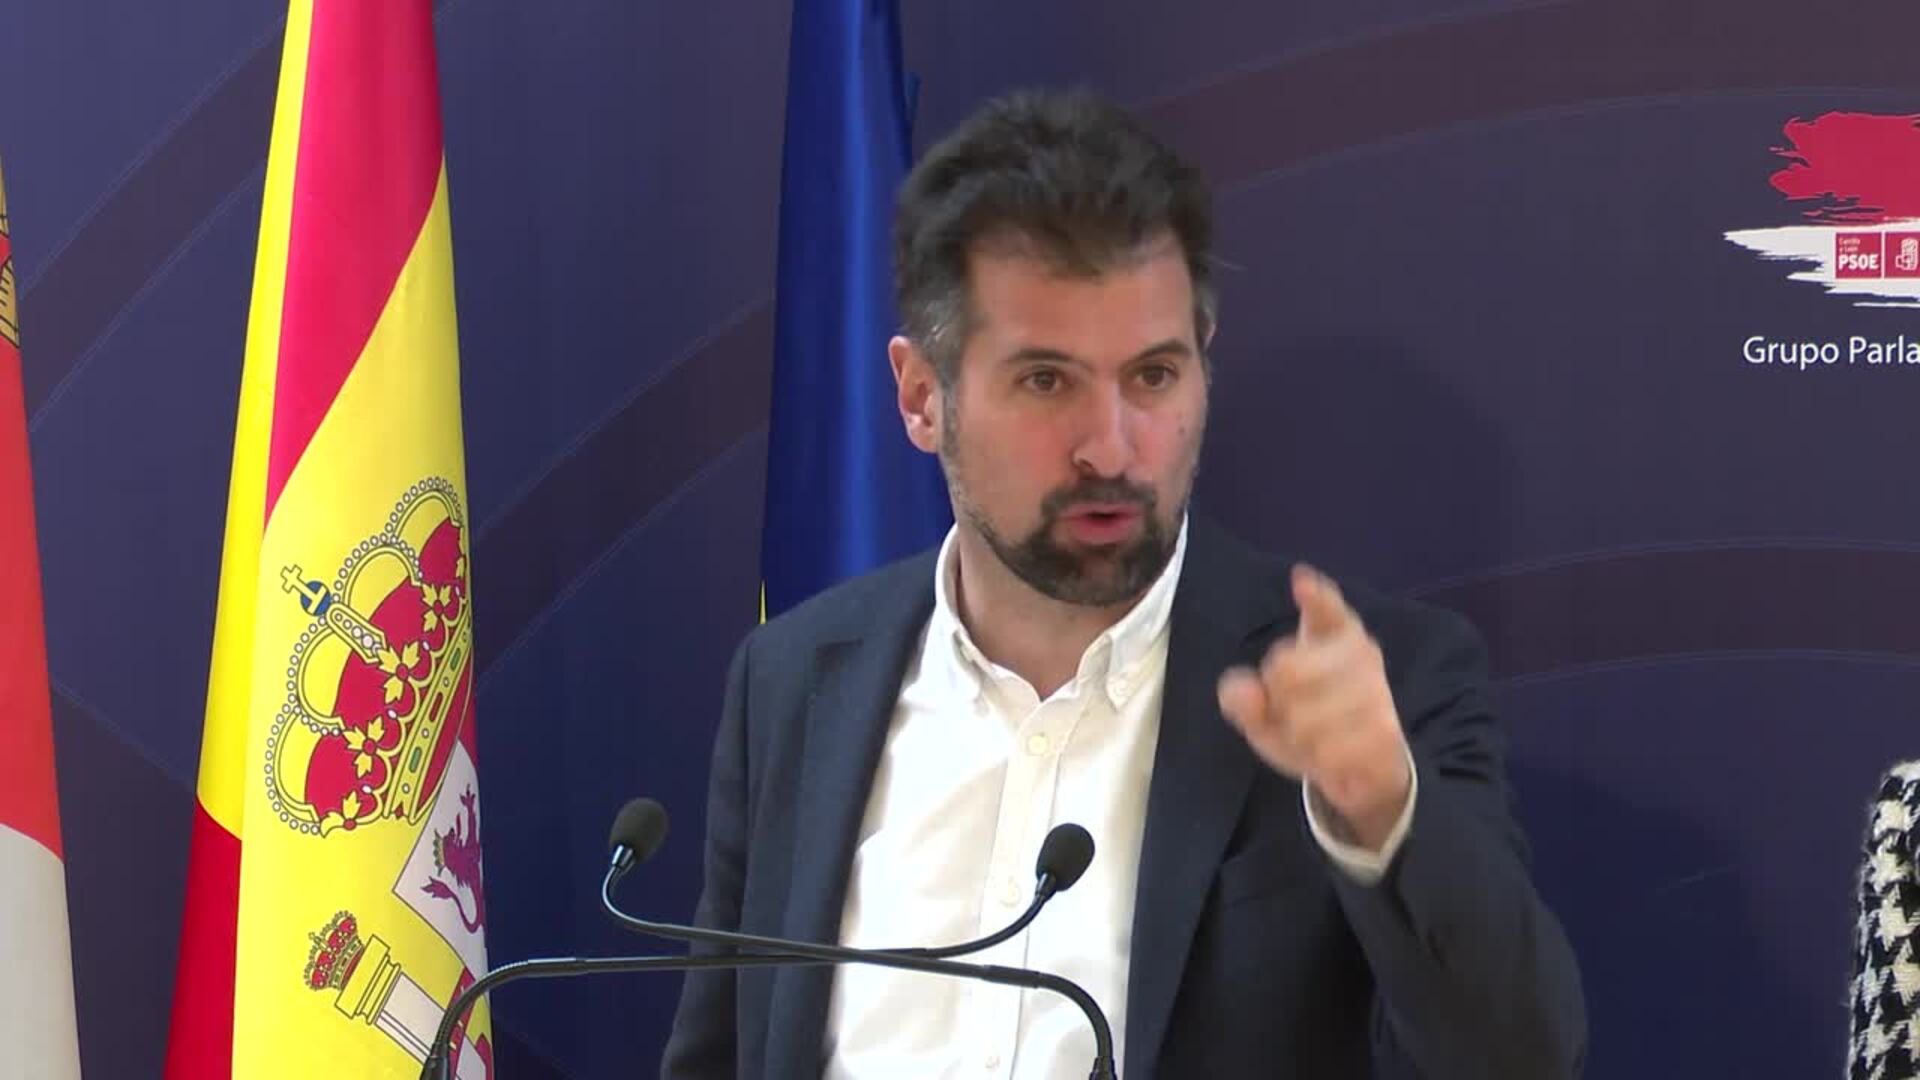 Tudanca avala la decisión del PSOE sobre Ábalos y afirma: "primero el país y luego el partido"